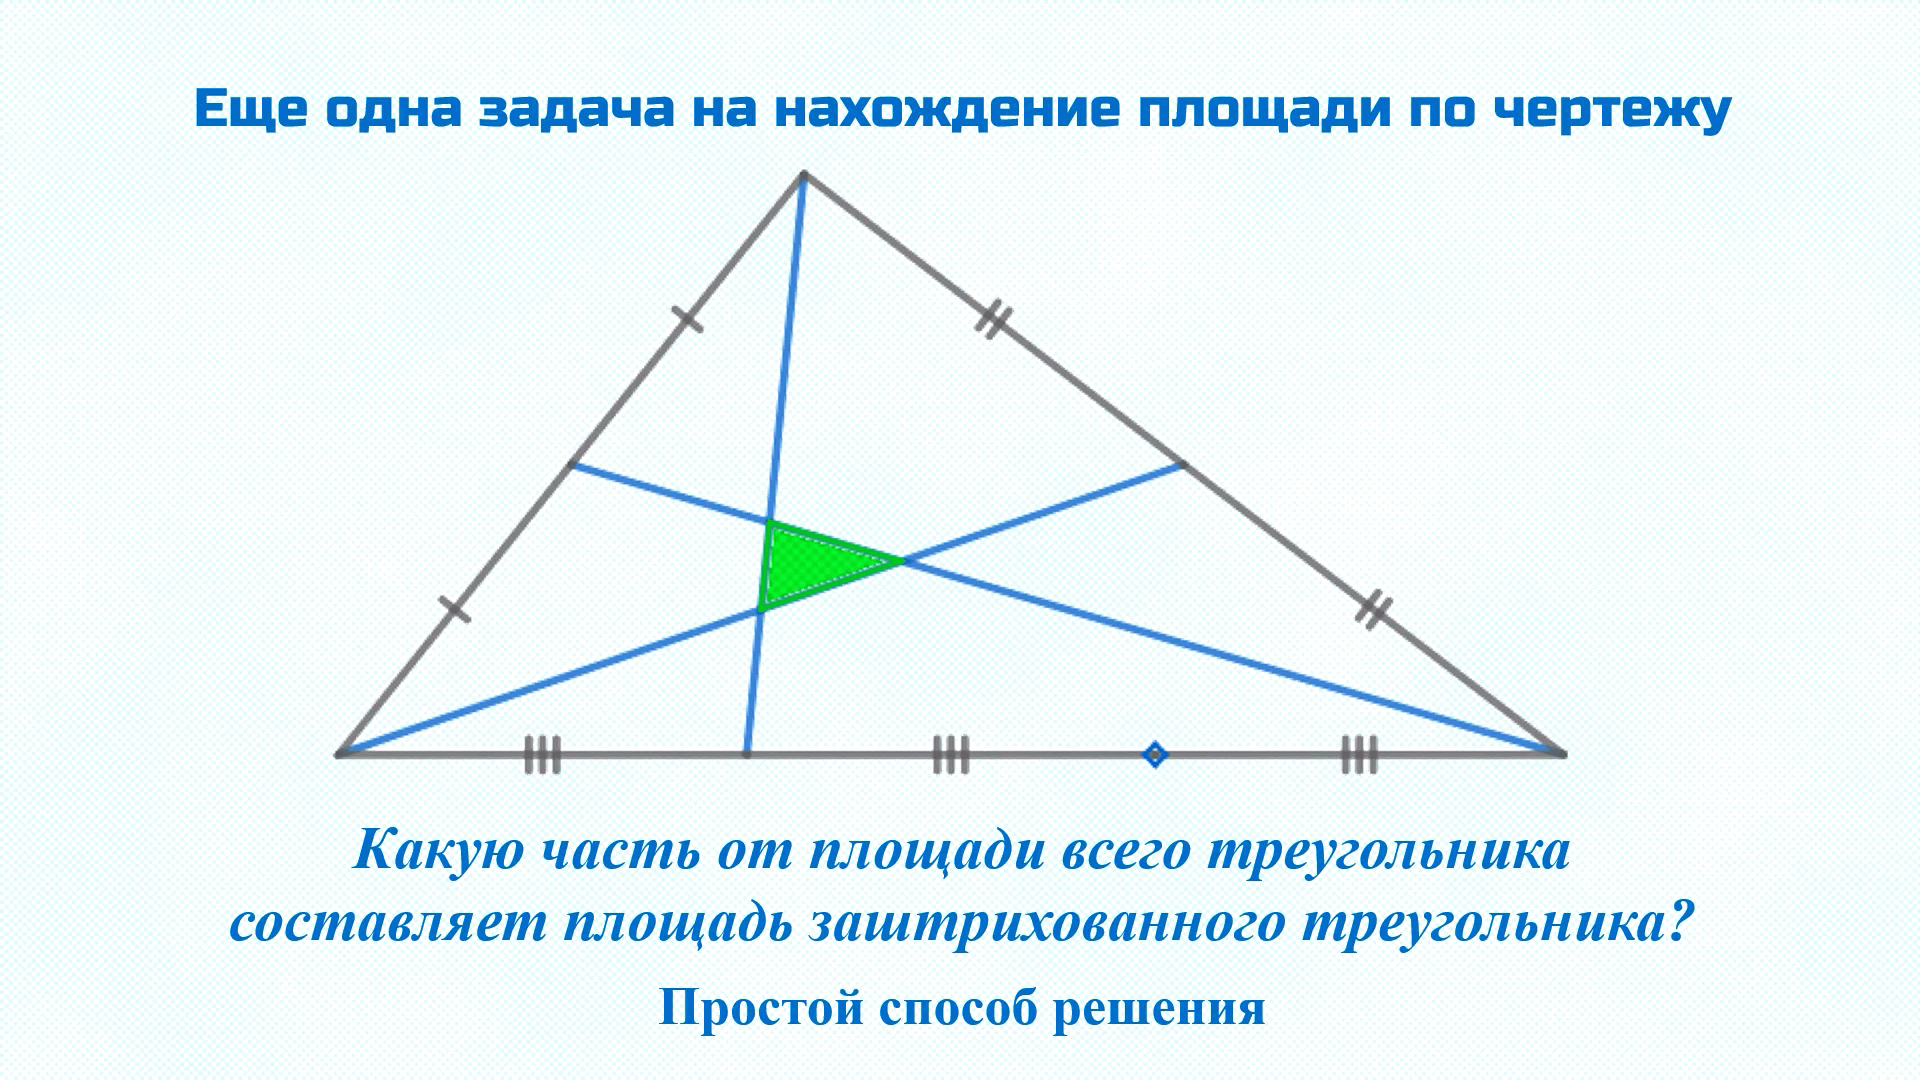 Равнобедренный тупоугольный треугольник авс. Равносторонний тупоугольный треугольник. Медиана тупоугольного треугольника. Биссектриса тупоугольного треугольника. Площадь тупоугольного треугольника.